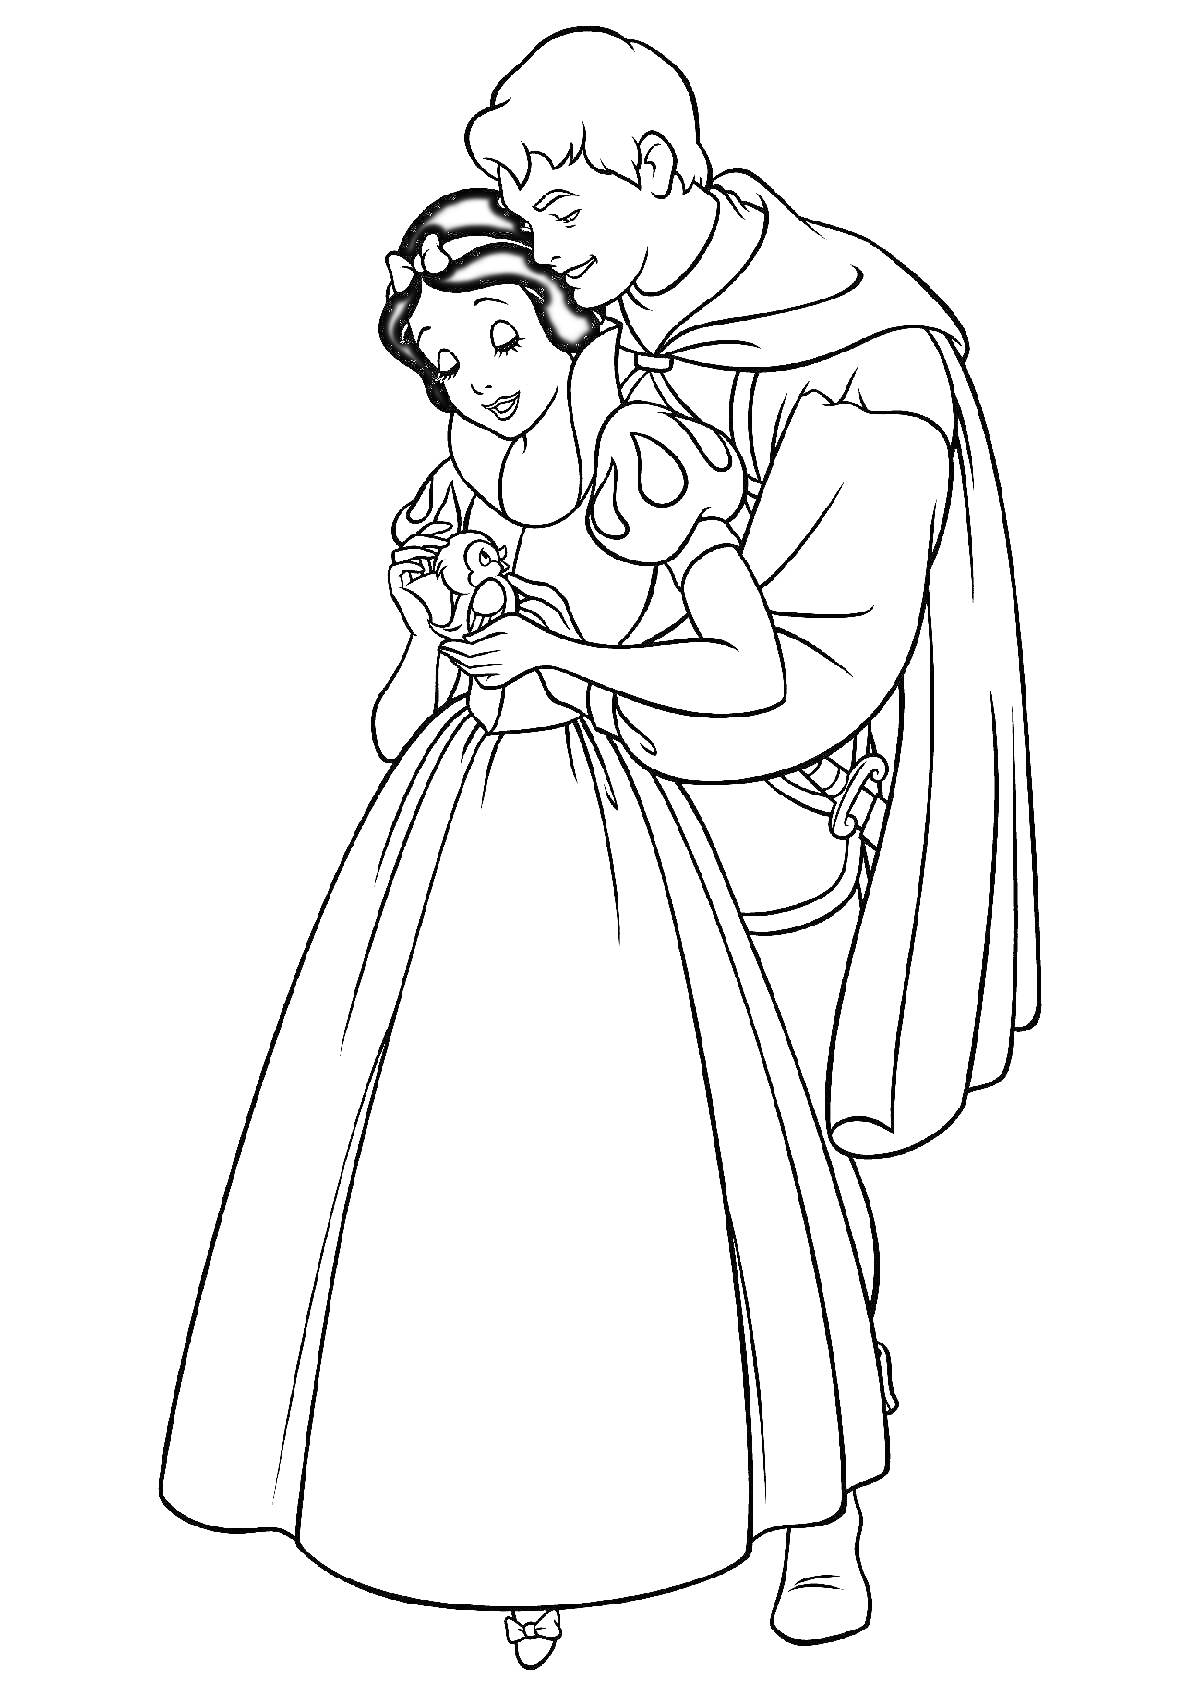 Раскраска Белоснежка и принц, стоящие обнявшись, с цветком в руках